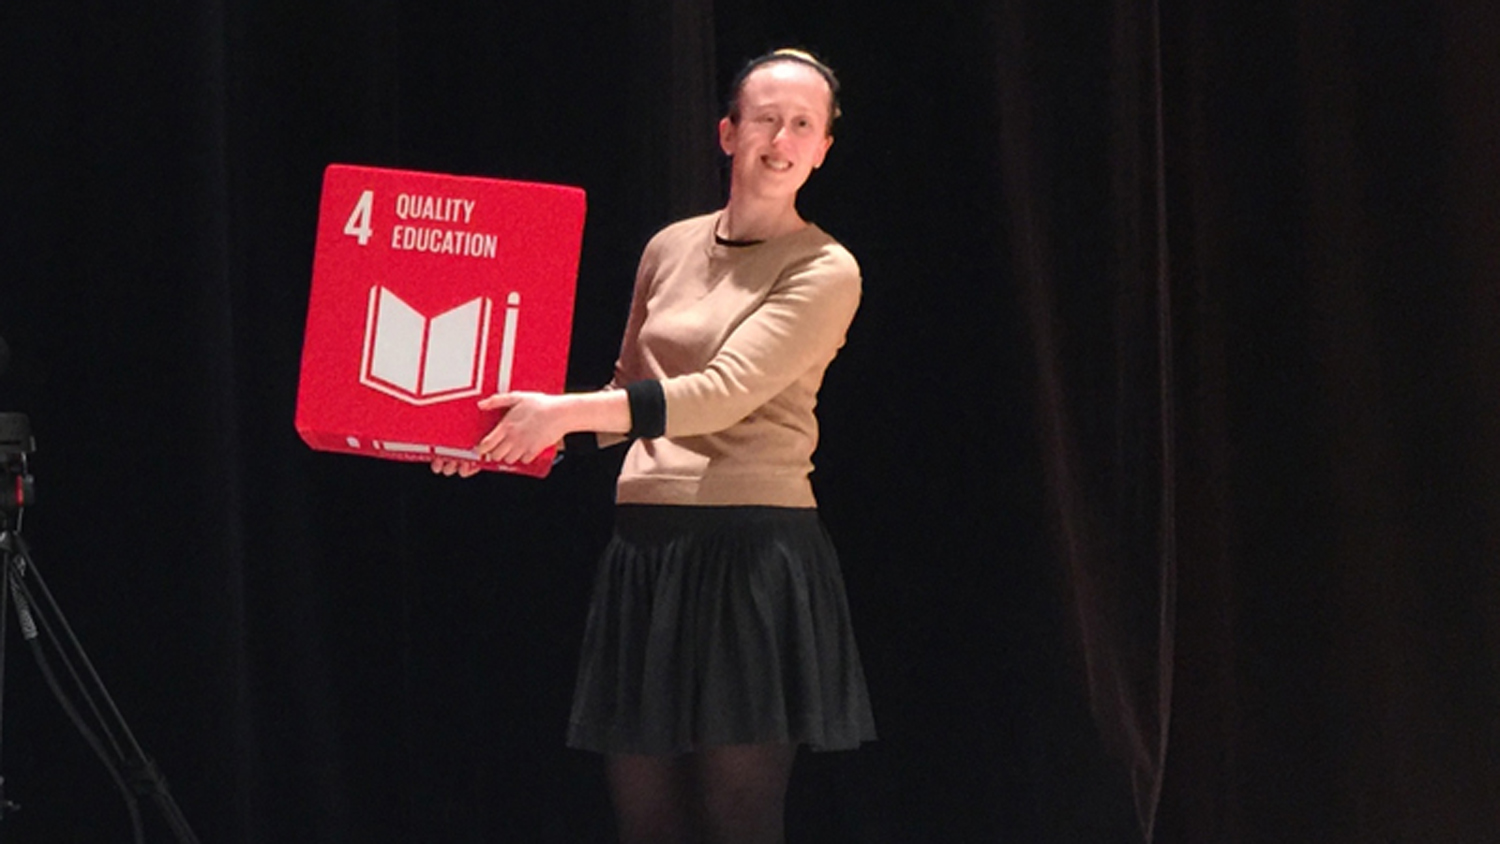 Anna Ilar.står på en scen och visar upp en stor kub som det står Quality Education på.